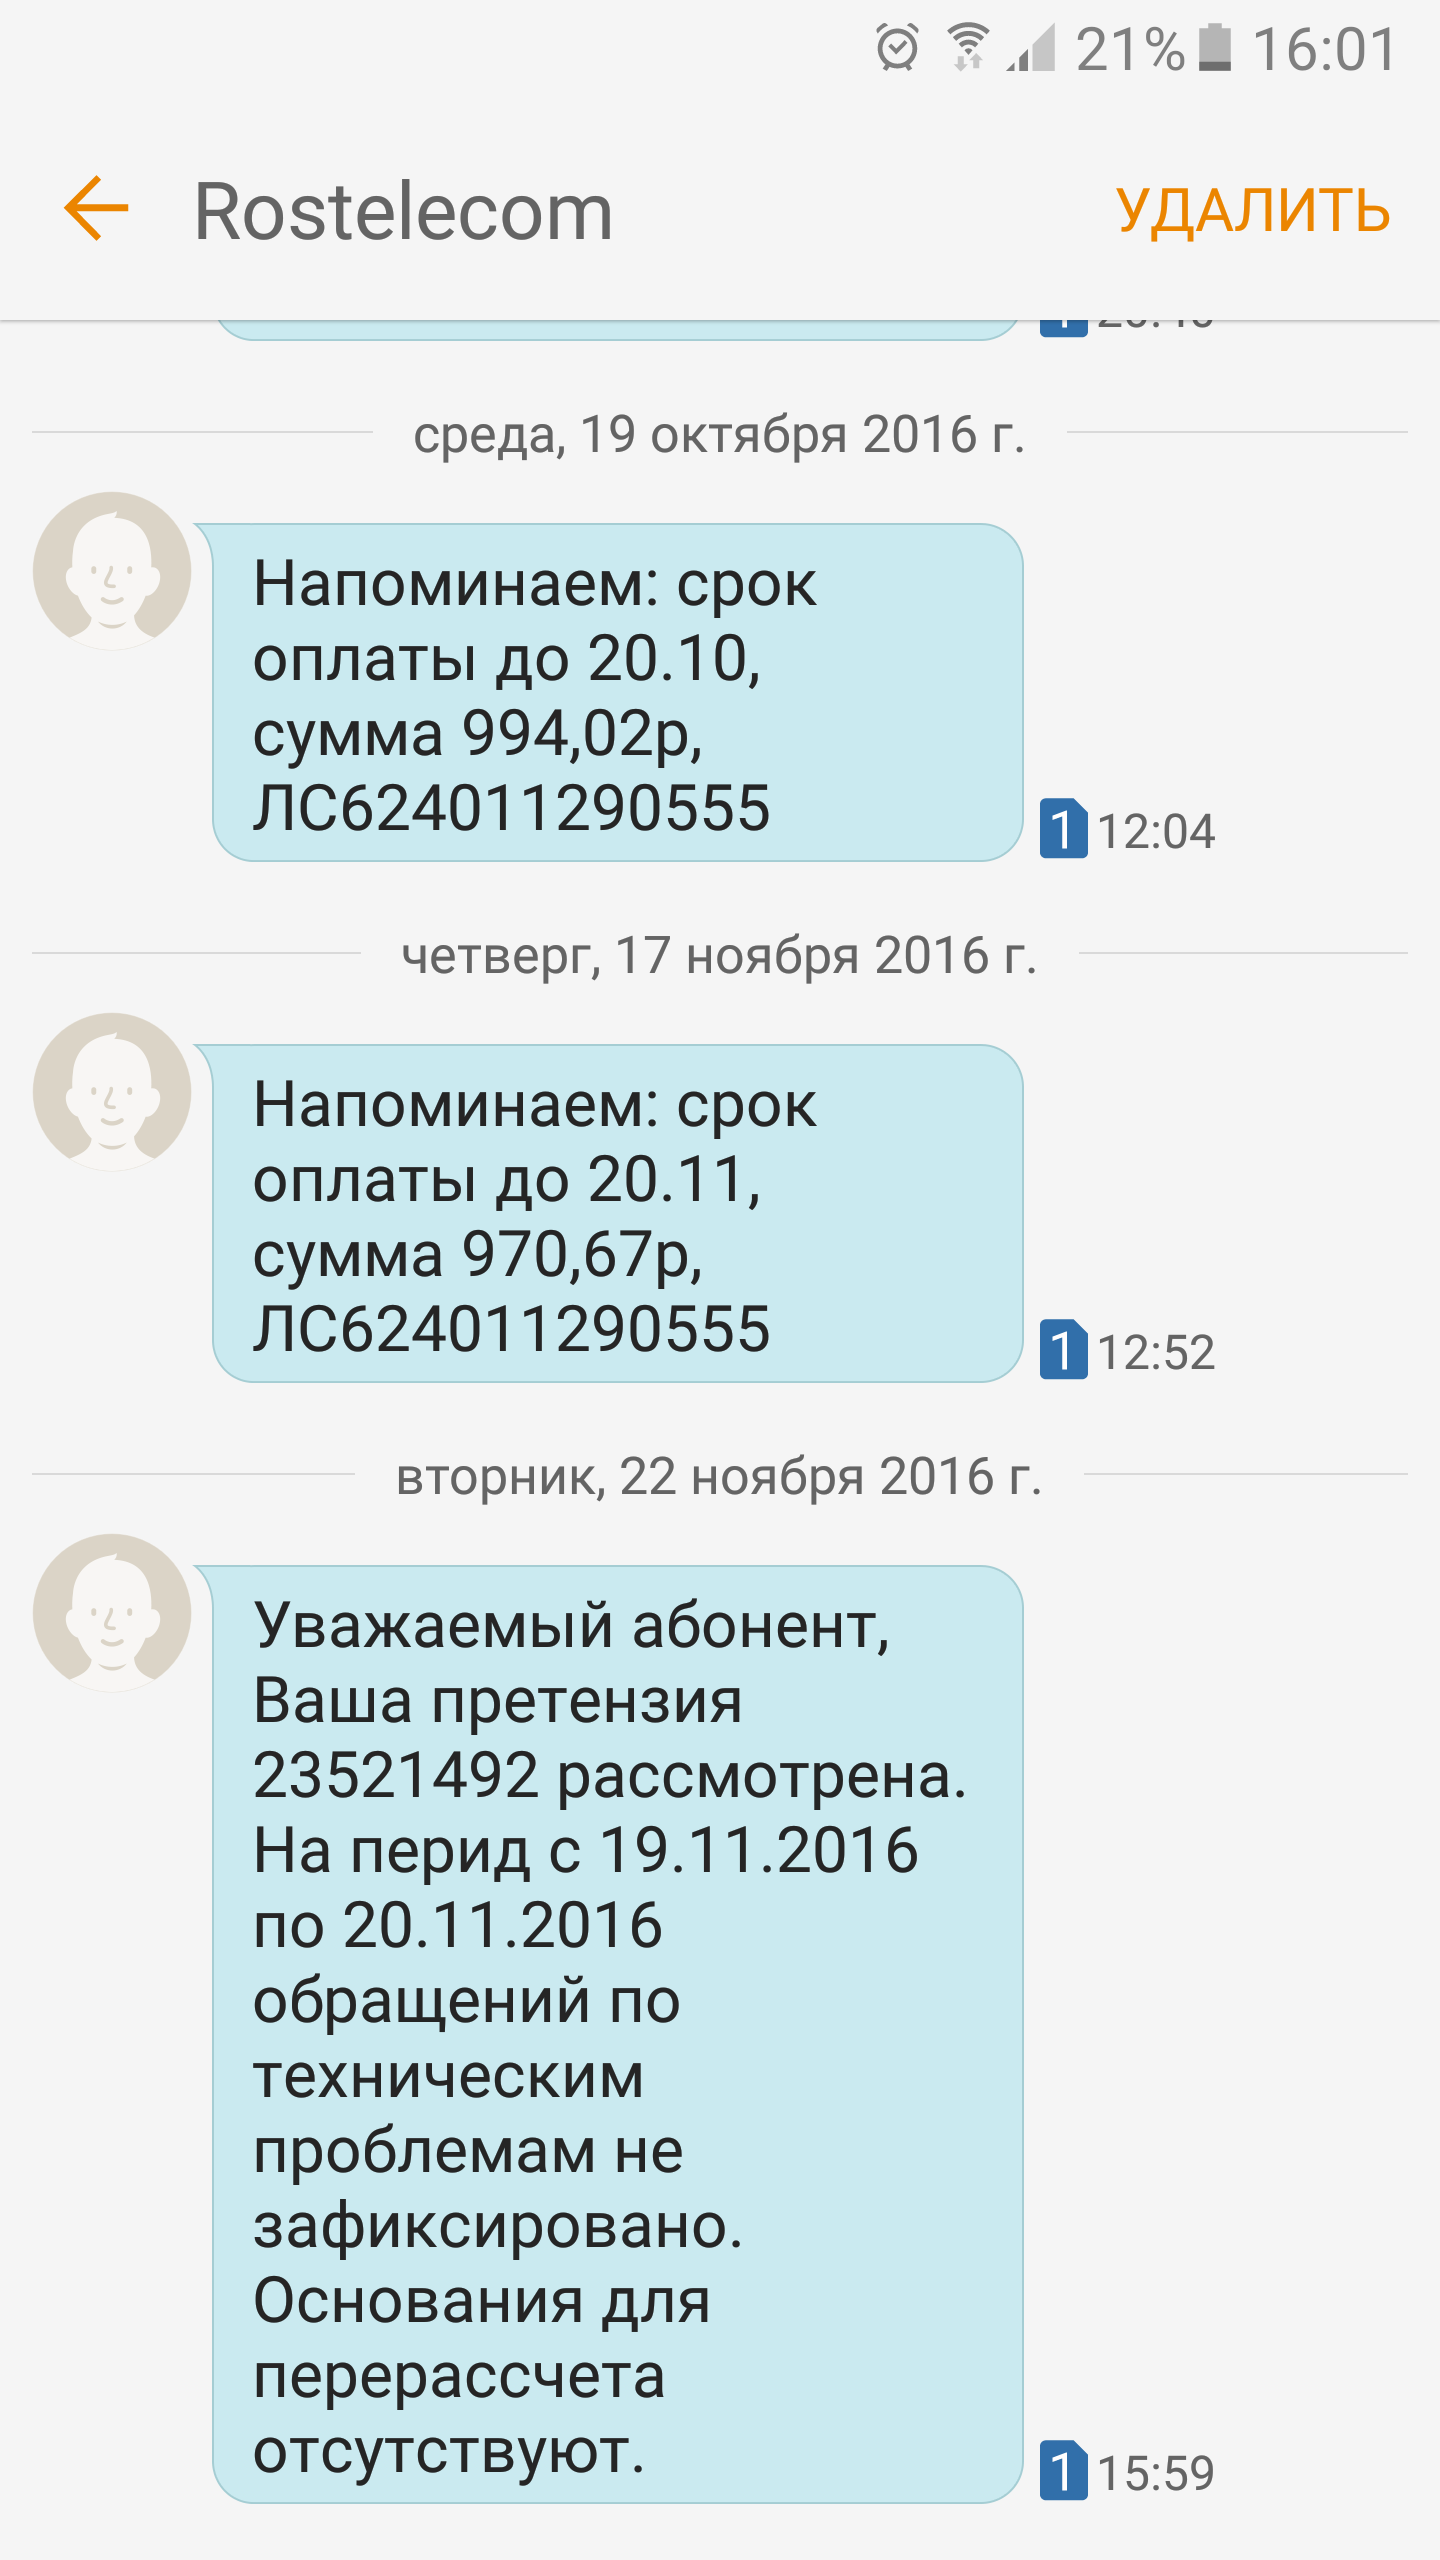 Саяногорск Инфо - screenshot_20161122-160125.png, Скачано: 320